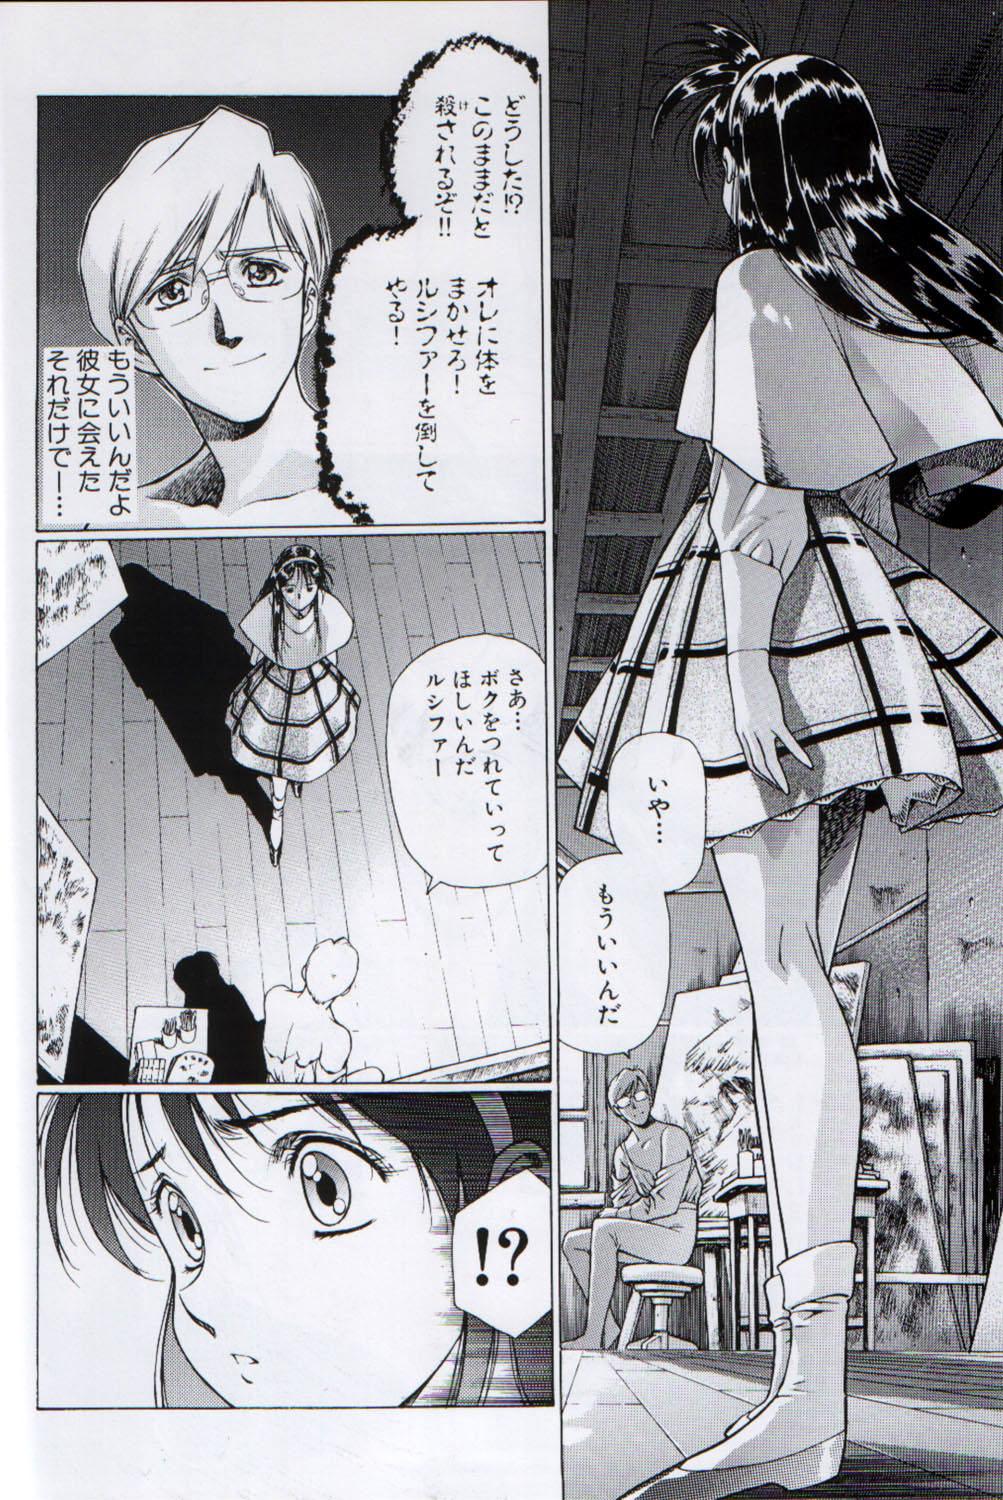 Tits Ah...Natsukashi no Heroine Tachi!! 3 - Grendizer Cornudo - Page 4